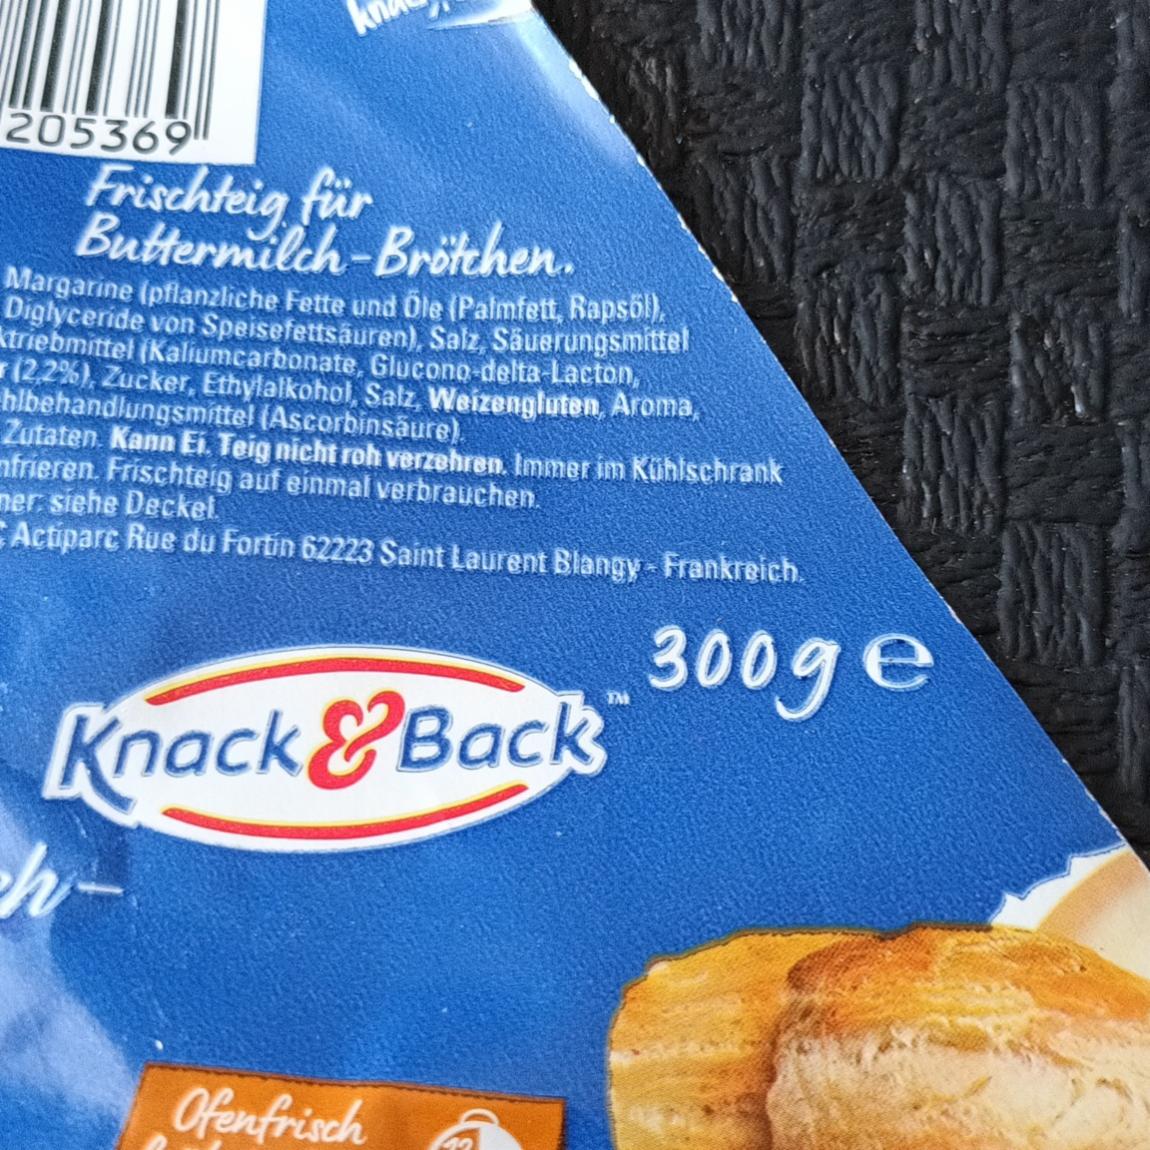 Fotografie - Frischteig für Buttermilch-Brötchen Knack&Back